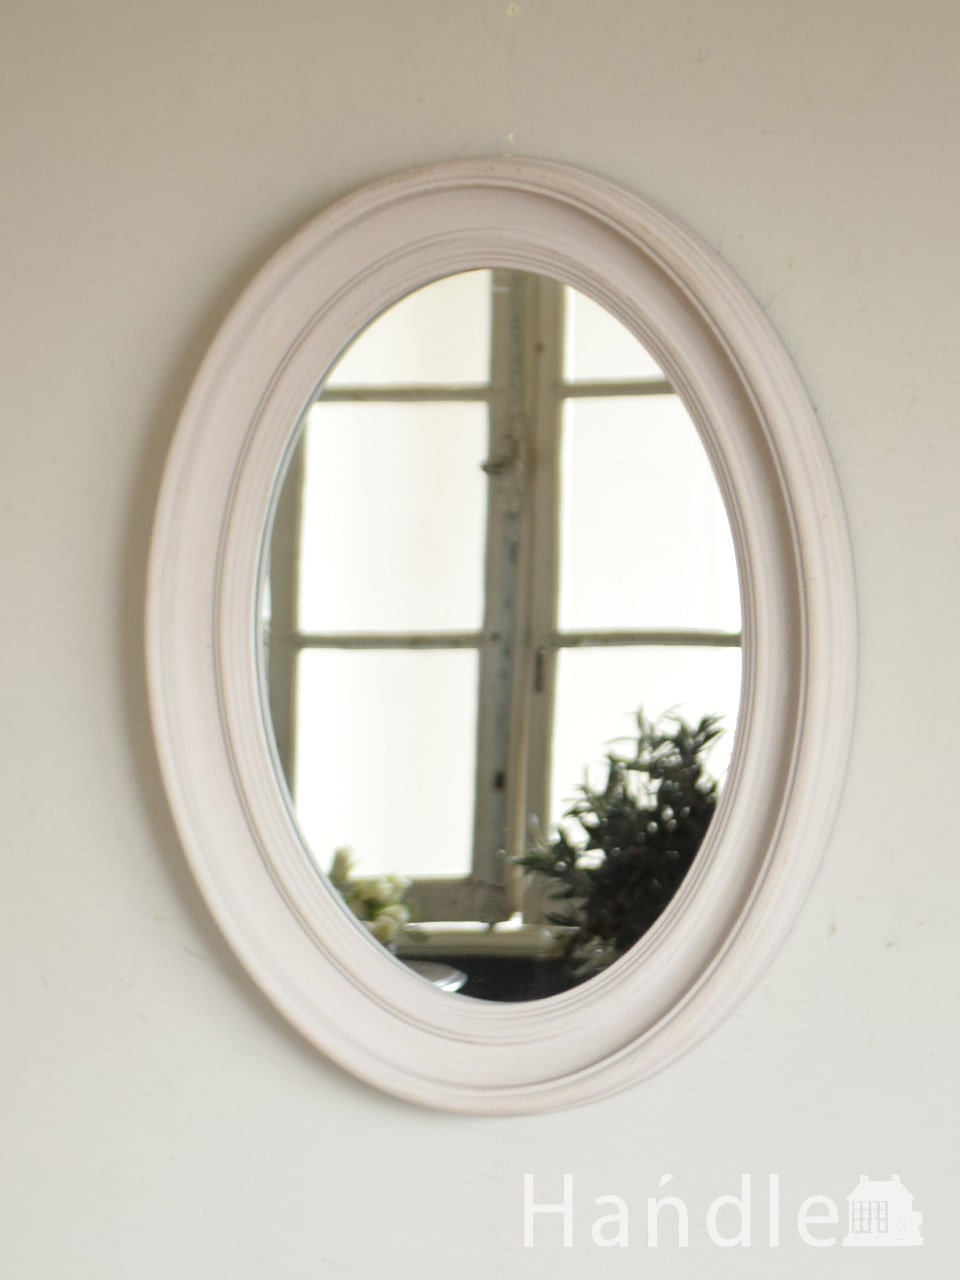 アンティーク調のおしゃれな鏡、オーバルの形をしたウォールミラー (n8-113)